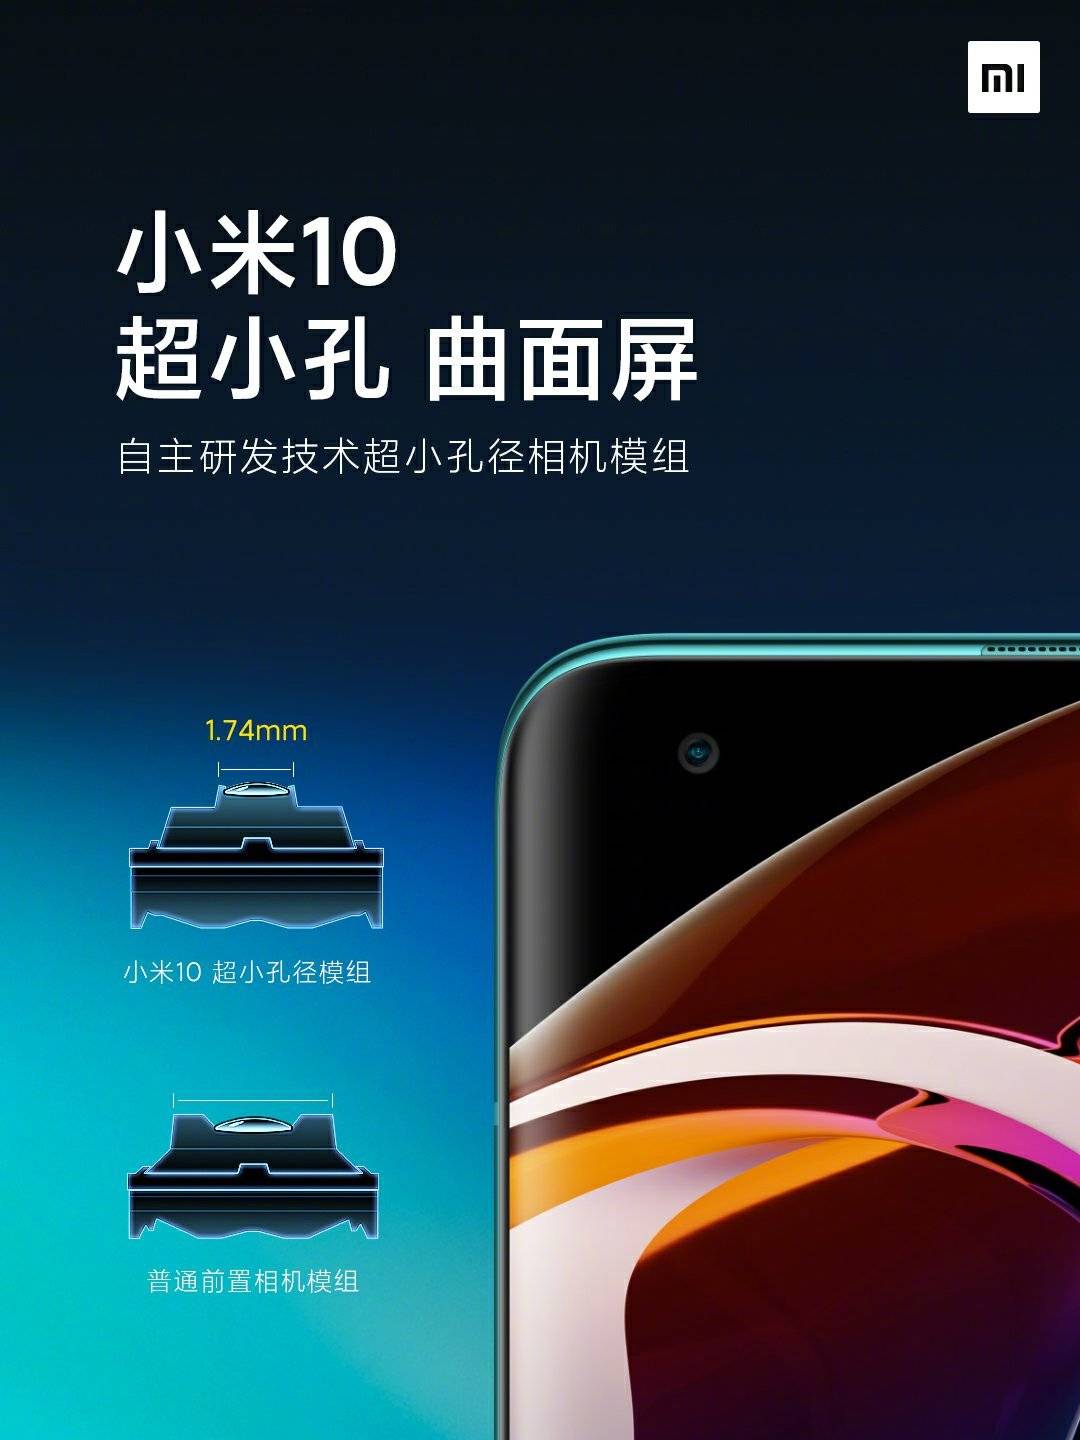 Xiaomi Mi 10 rekor derecede küçük bir ön kamera ile gelecek